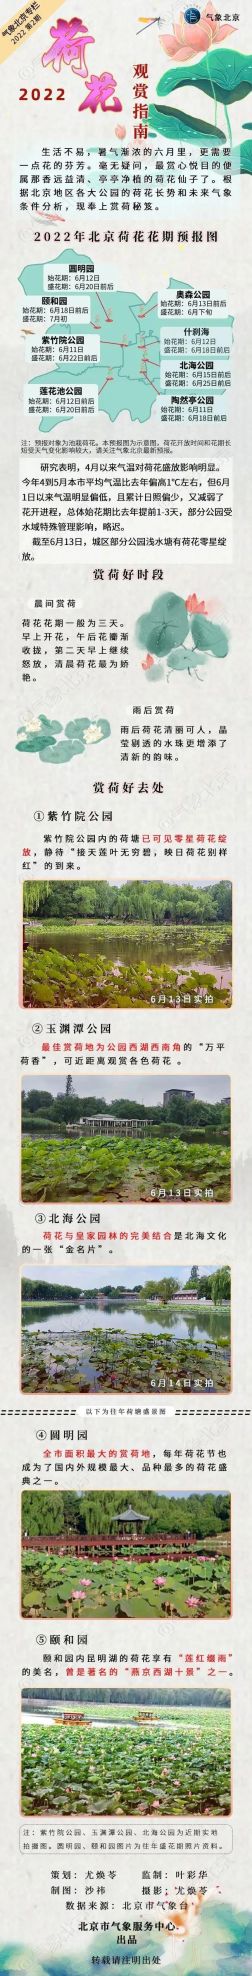 北京观赏荷花的公园(北京公园的荷花什么时候开放)